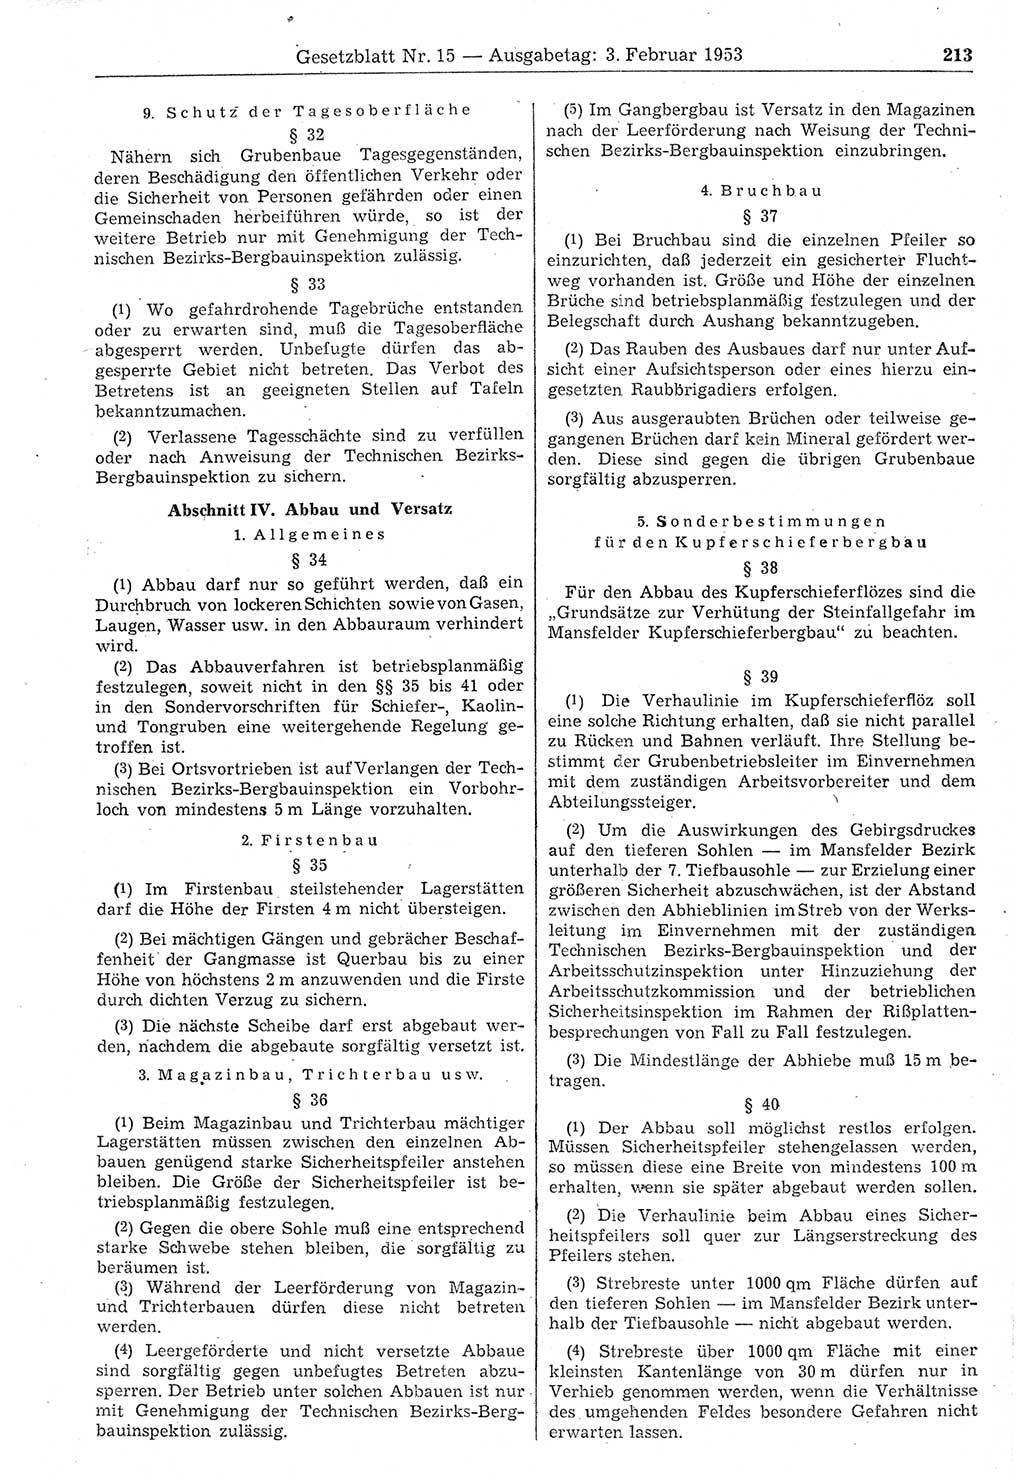 Gesetzblatt (GBl.) der Deutschen Demokratischen Republik (DDR) 1953, Seite 213 (GBl. DDR 1953, S. 213)